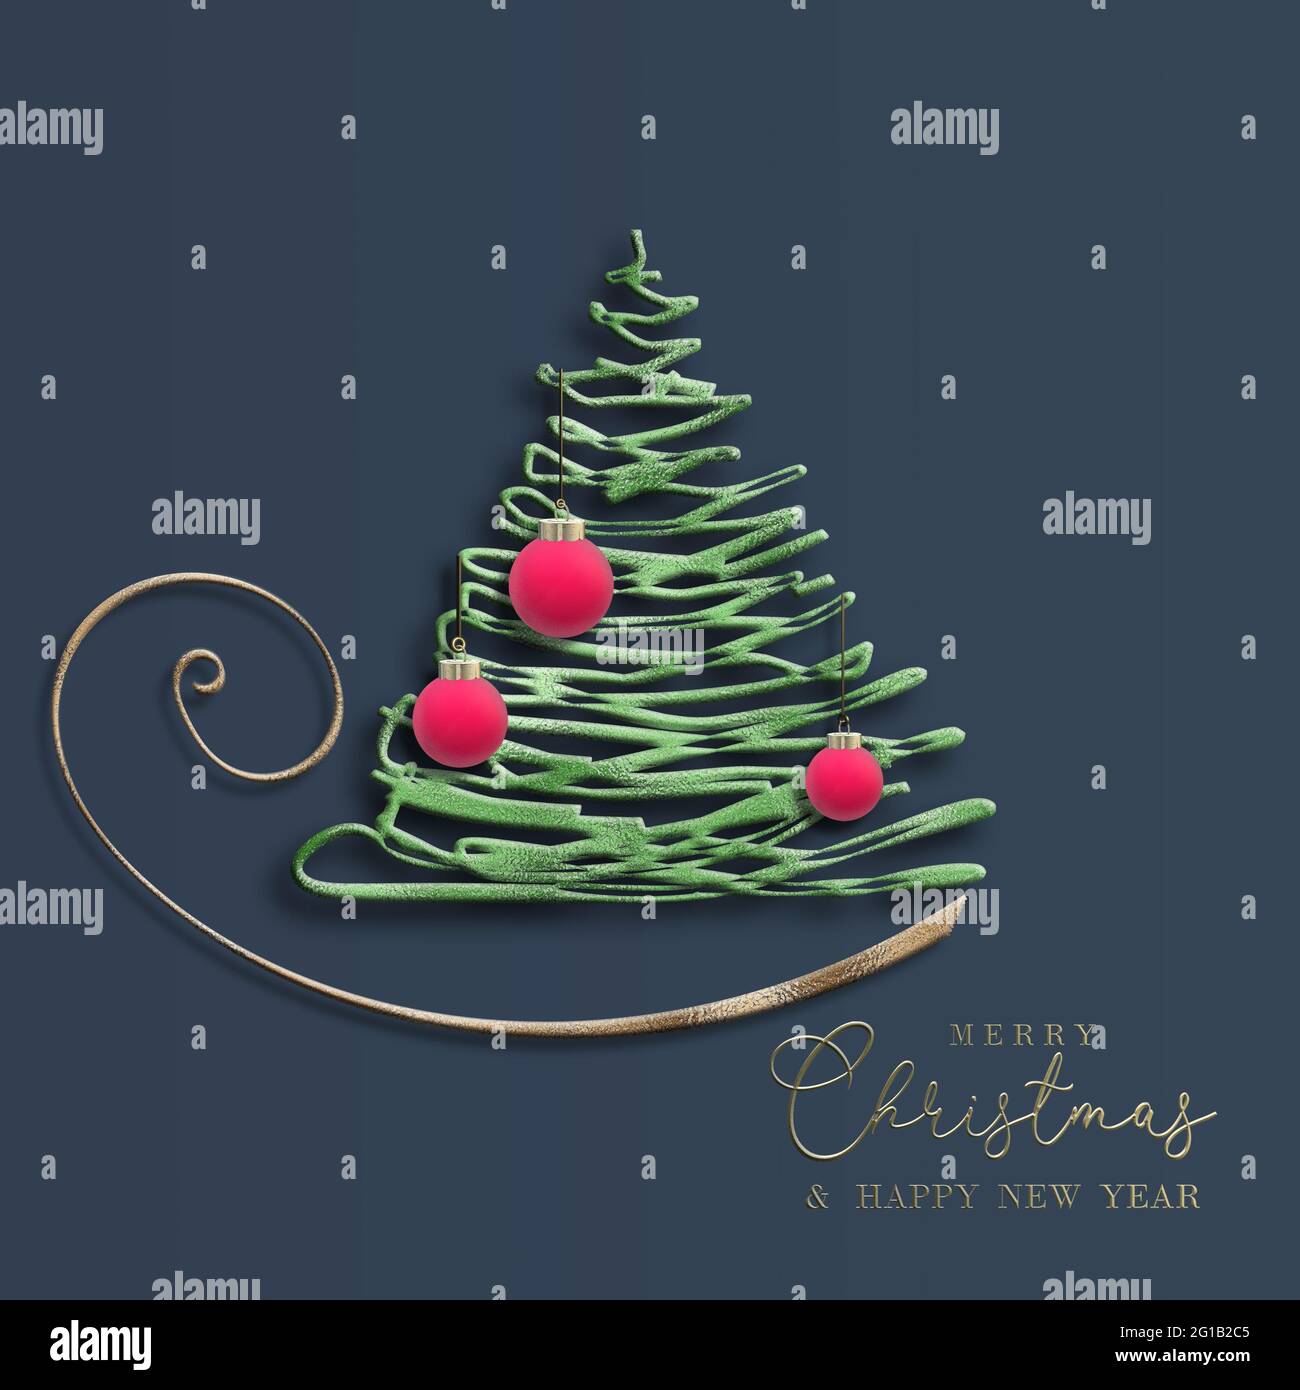 Tarjeta de Navidad de 2022 para Año Nuevo. Resumen Árbol de Navidad, colgando 3D bolas rojas, texto de oro Feliz Navidad Feliz Año Nuevo en azul. 3D tarjetas de felicitación de Navidad. Foto de stock